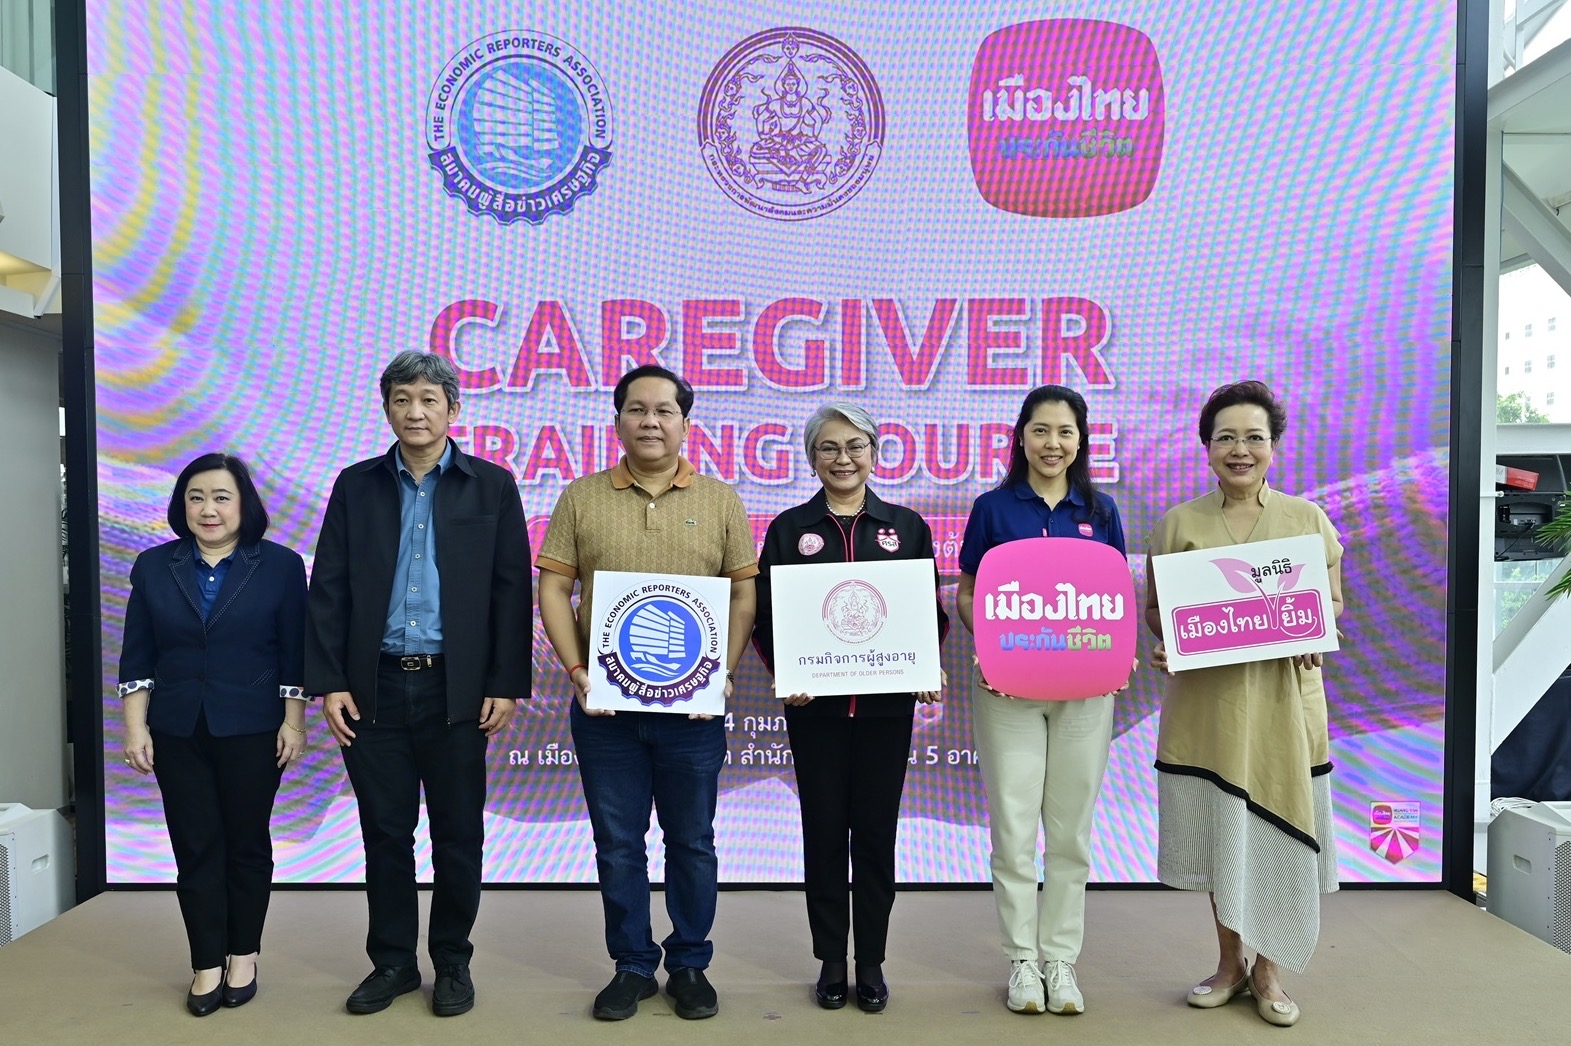 เมืองไทยประกันชีวิต มูลนิธิเมืองไทยยิ้ม จับมือกรมกิจการผู้สูงอายุและสมาคมผู้สื่อข่าวเศรษฐกิจ จัดการอบรมหลักสูตรดูแลผู้สูงอายุ Care Giver รุ่นที่ 3